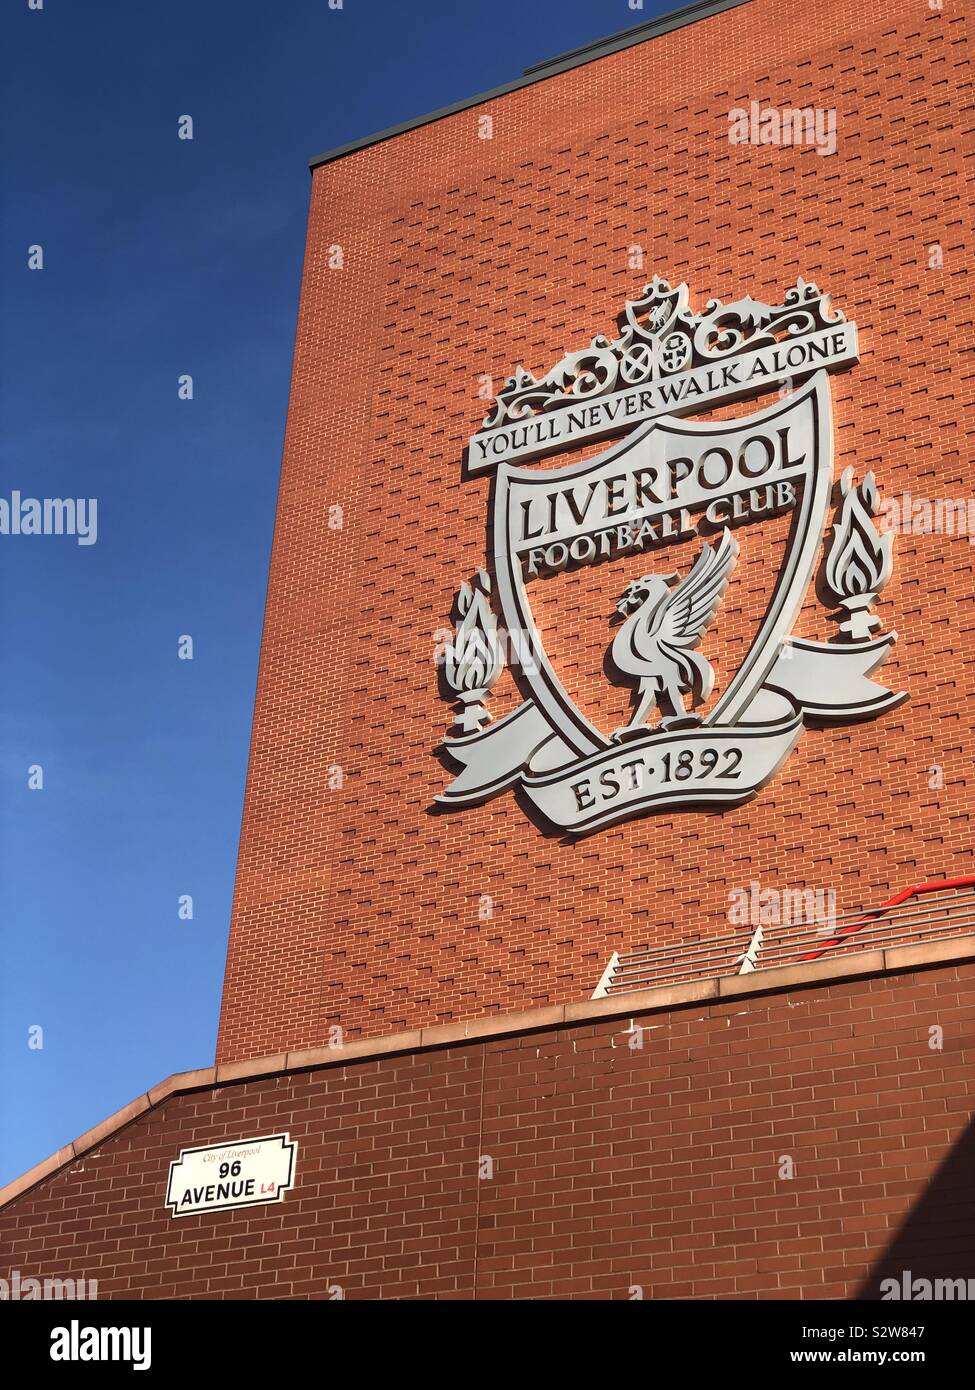 Anfield stadium Liverpool Football Club. Non vi troverete mai a camminare da soli lfc crest badge sulla parete dello stadio. Foto Stock